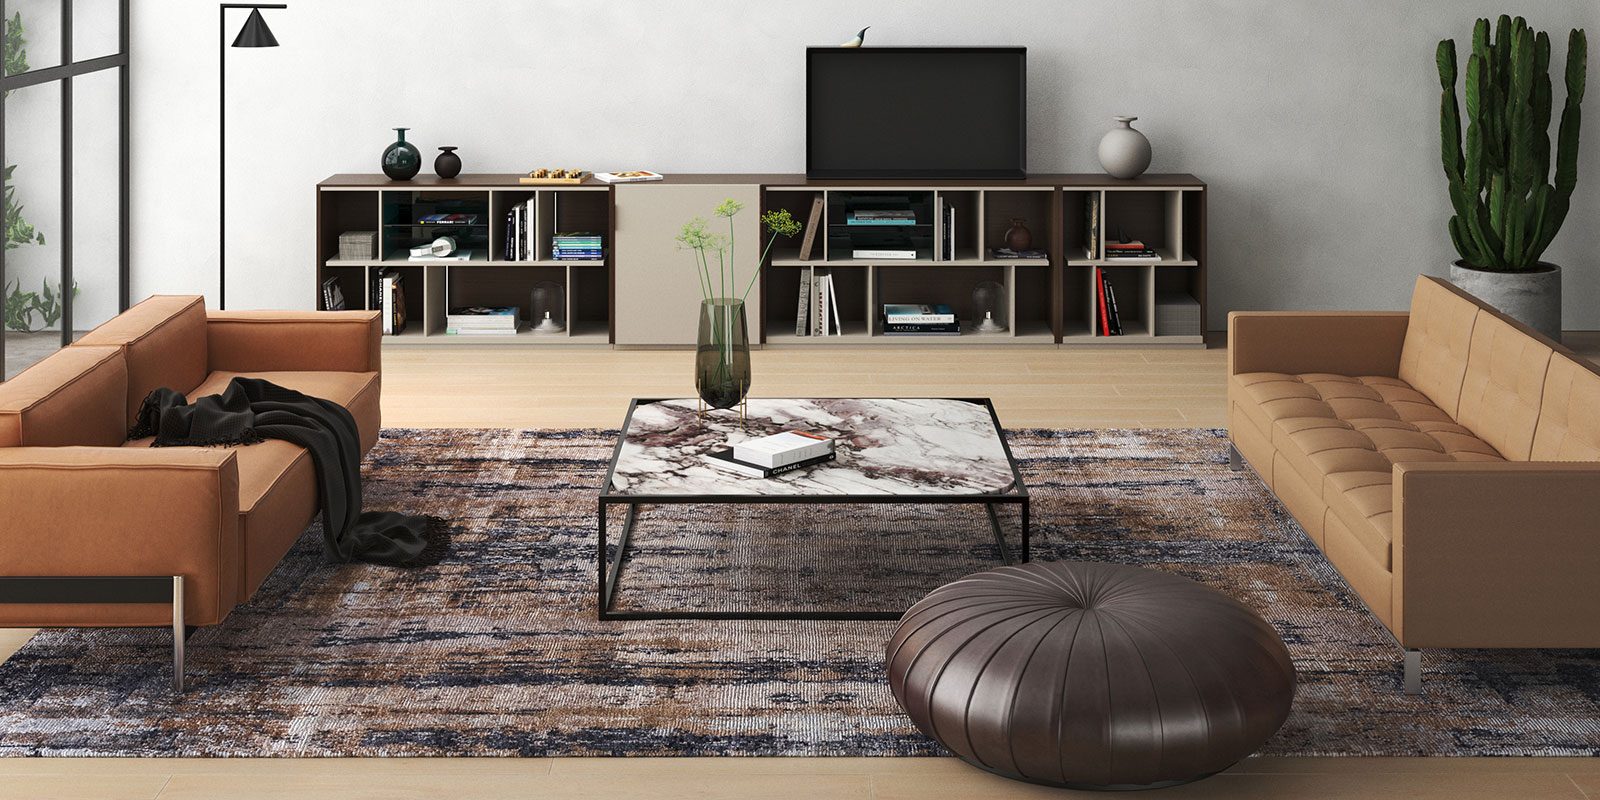 Modernes Wohnzimmer mit zwei braunen Sofas, einem zentralen Marmortisch auf einem gemusterten Teppich, einem niedrigen Fernsehschrank und einer großen grünen Pflanze neben einer Fensterfront mit Blick auf eine begrünte Terrasse.